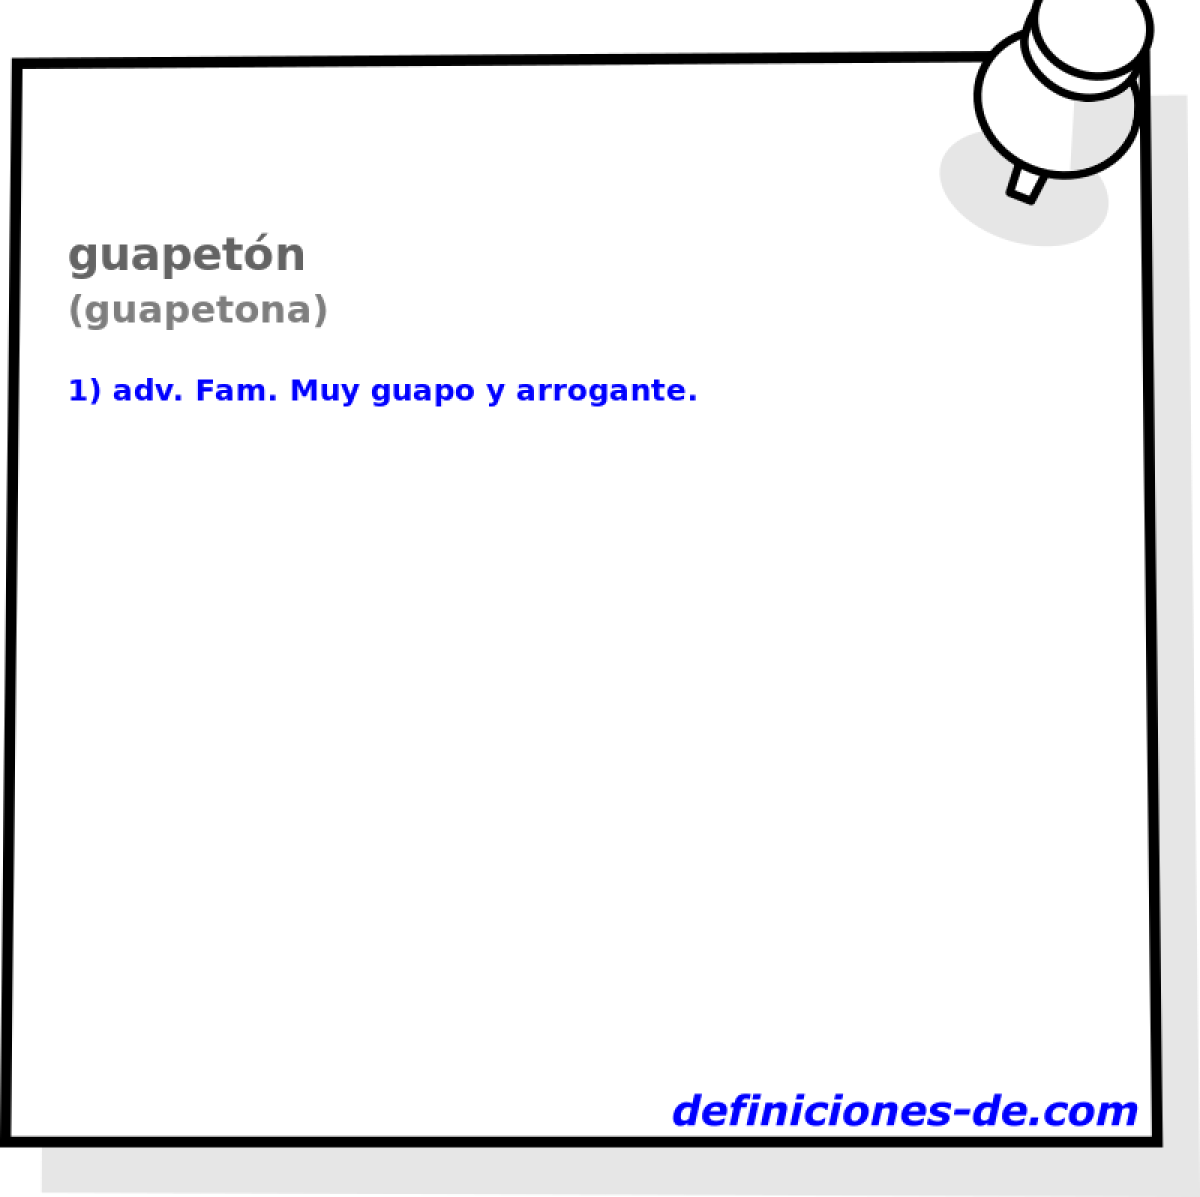 guapetn (guapetona)